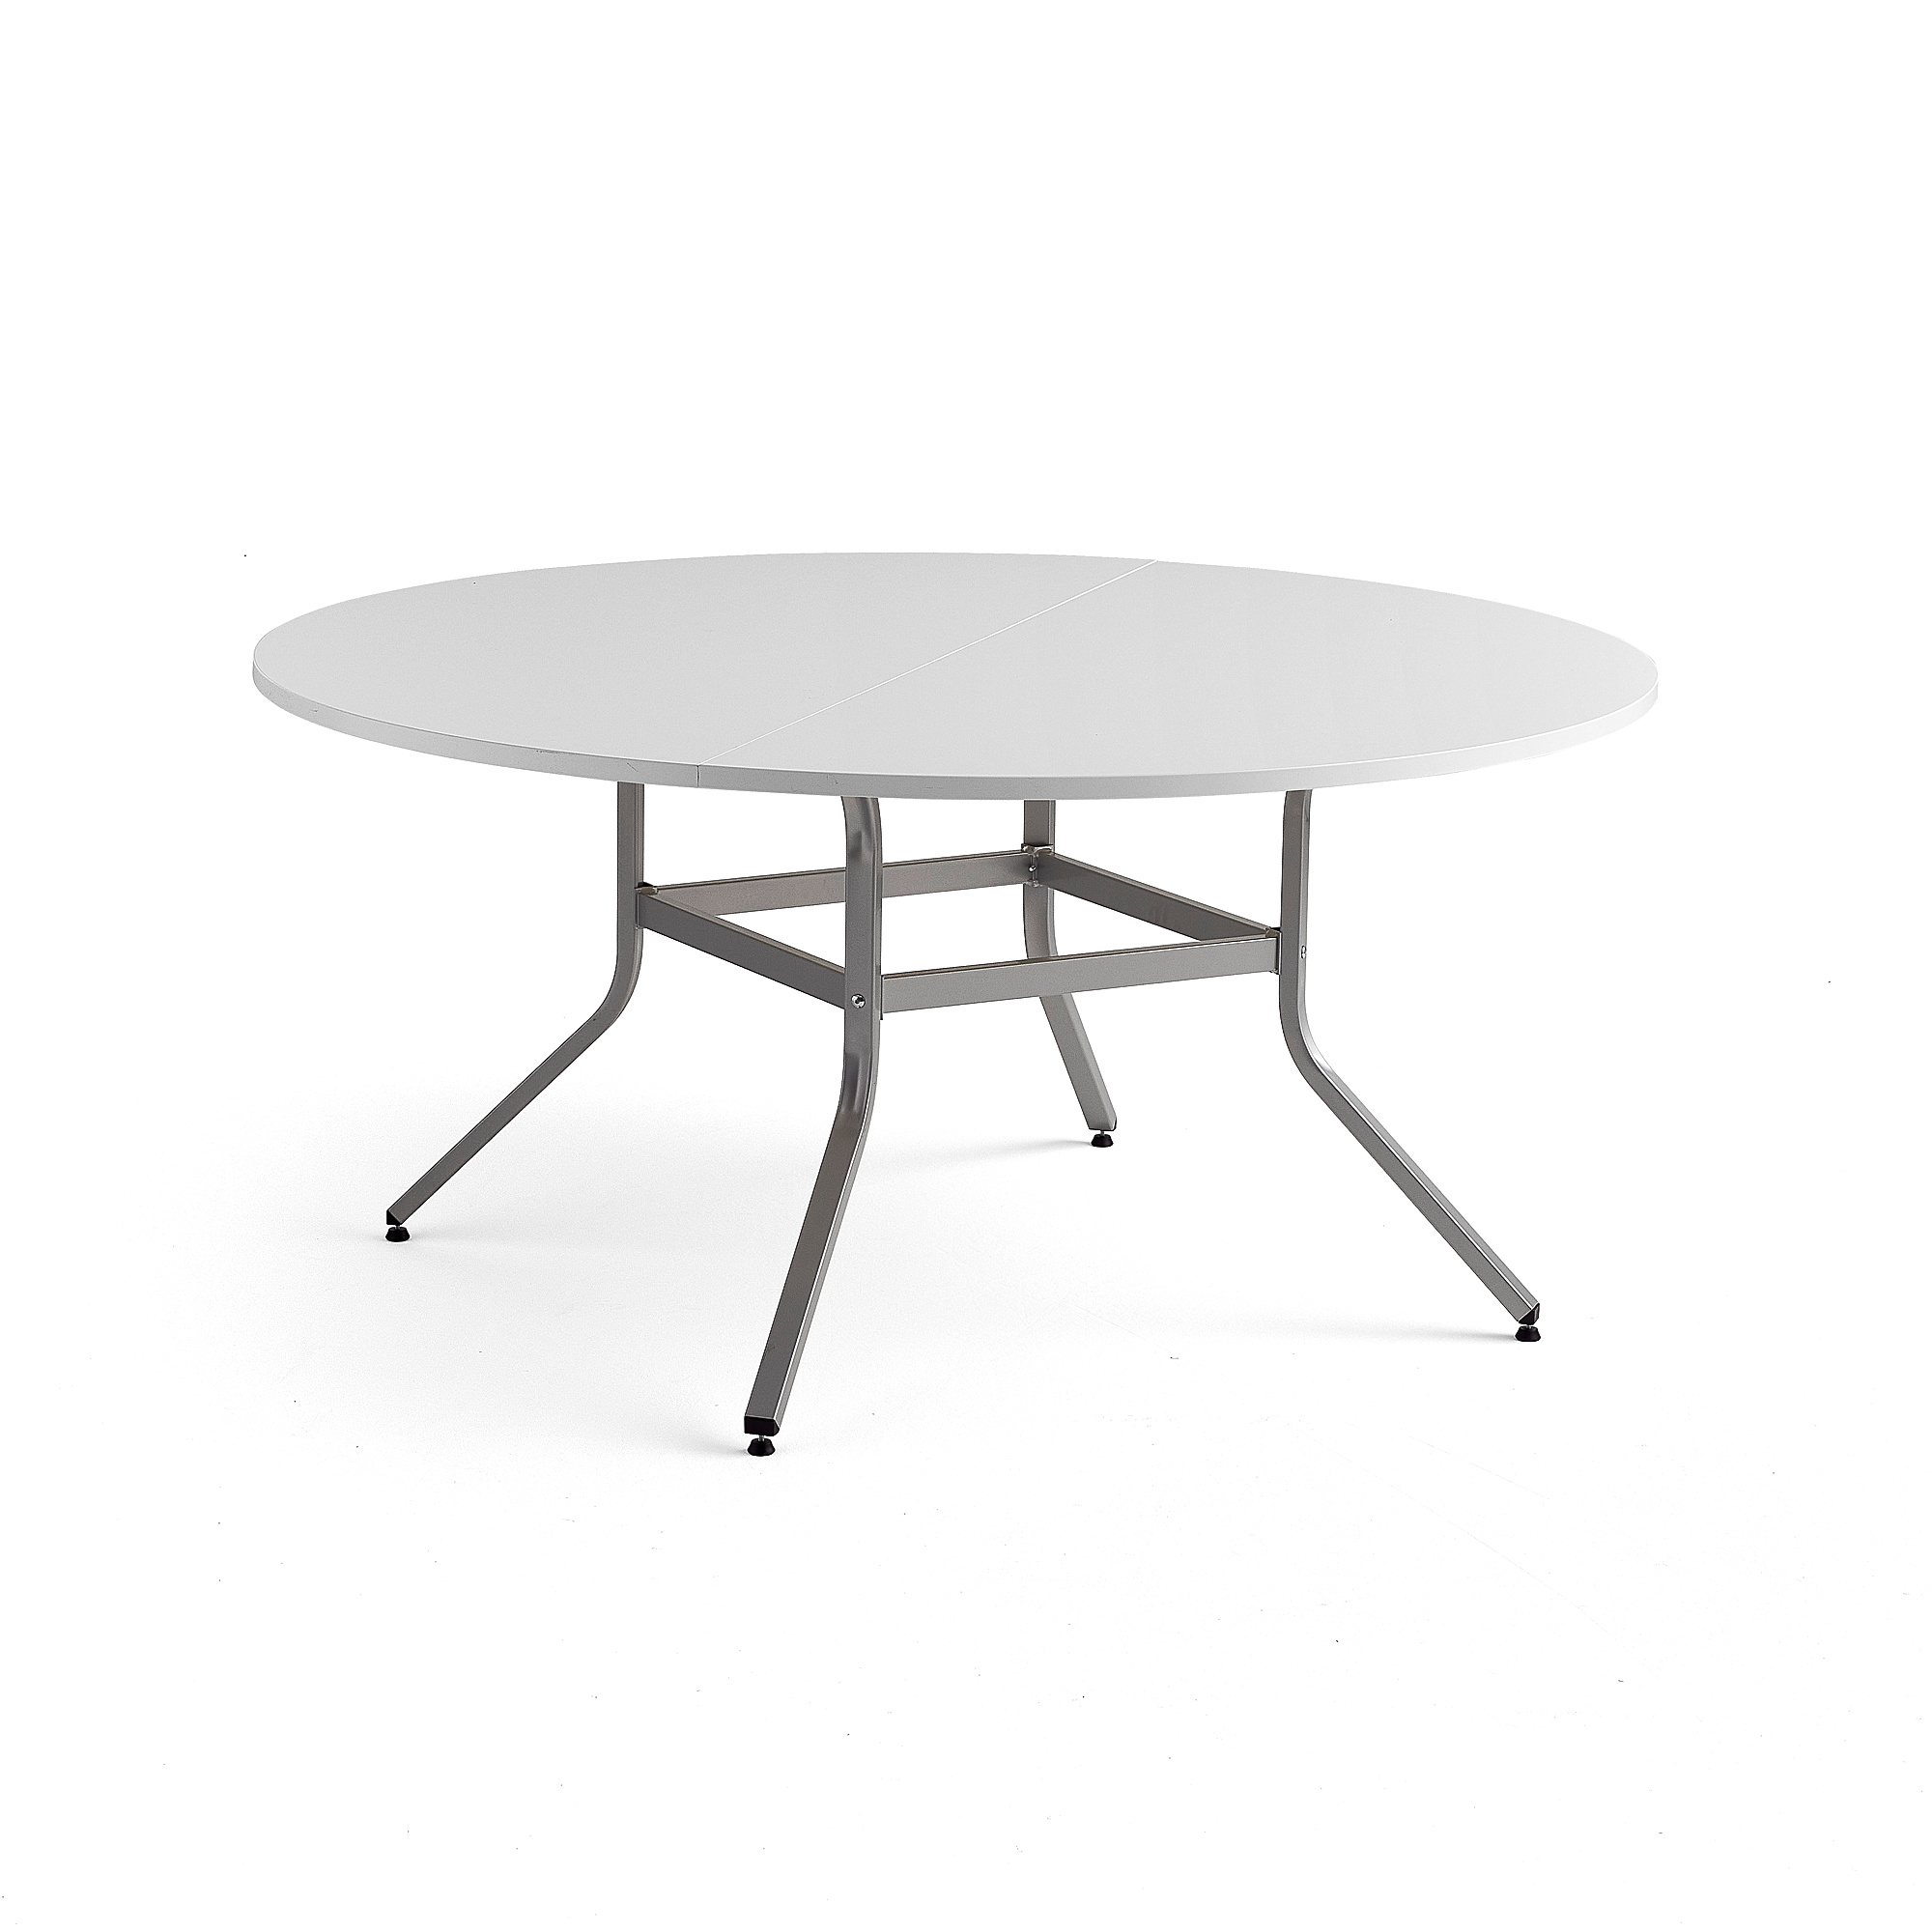 Stôl VARIOUS, Ø1600 mm, výška 740 mm, strieborná, biela